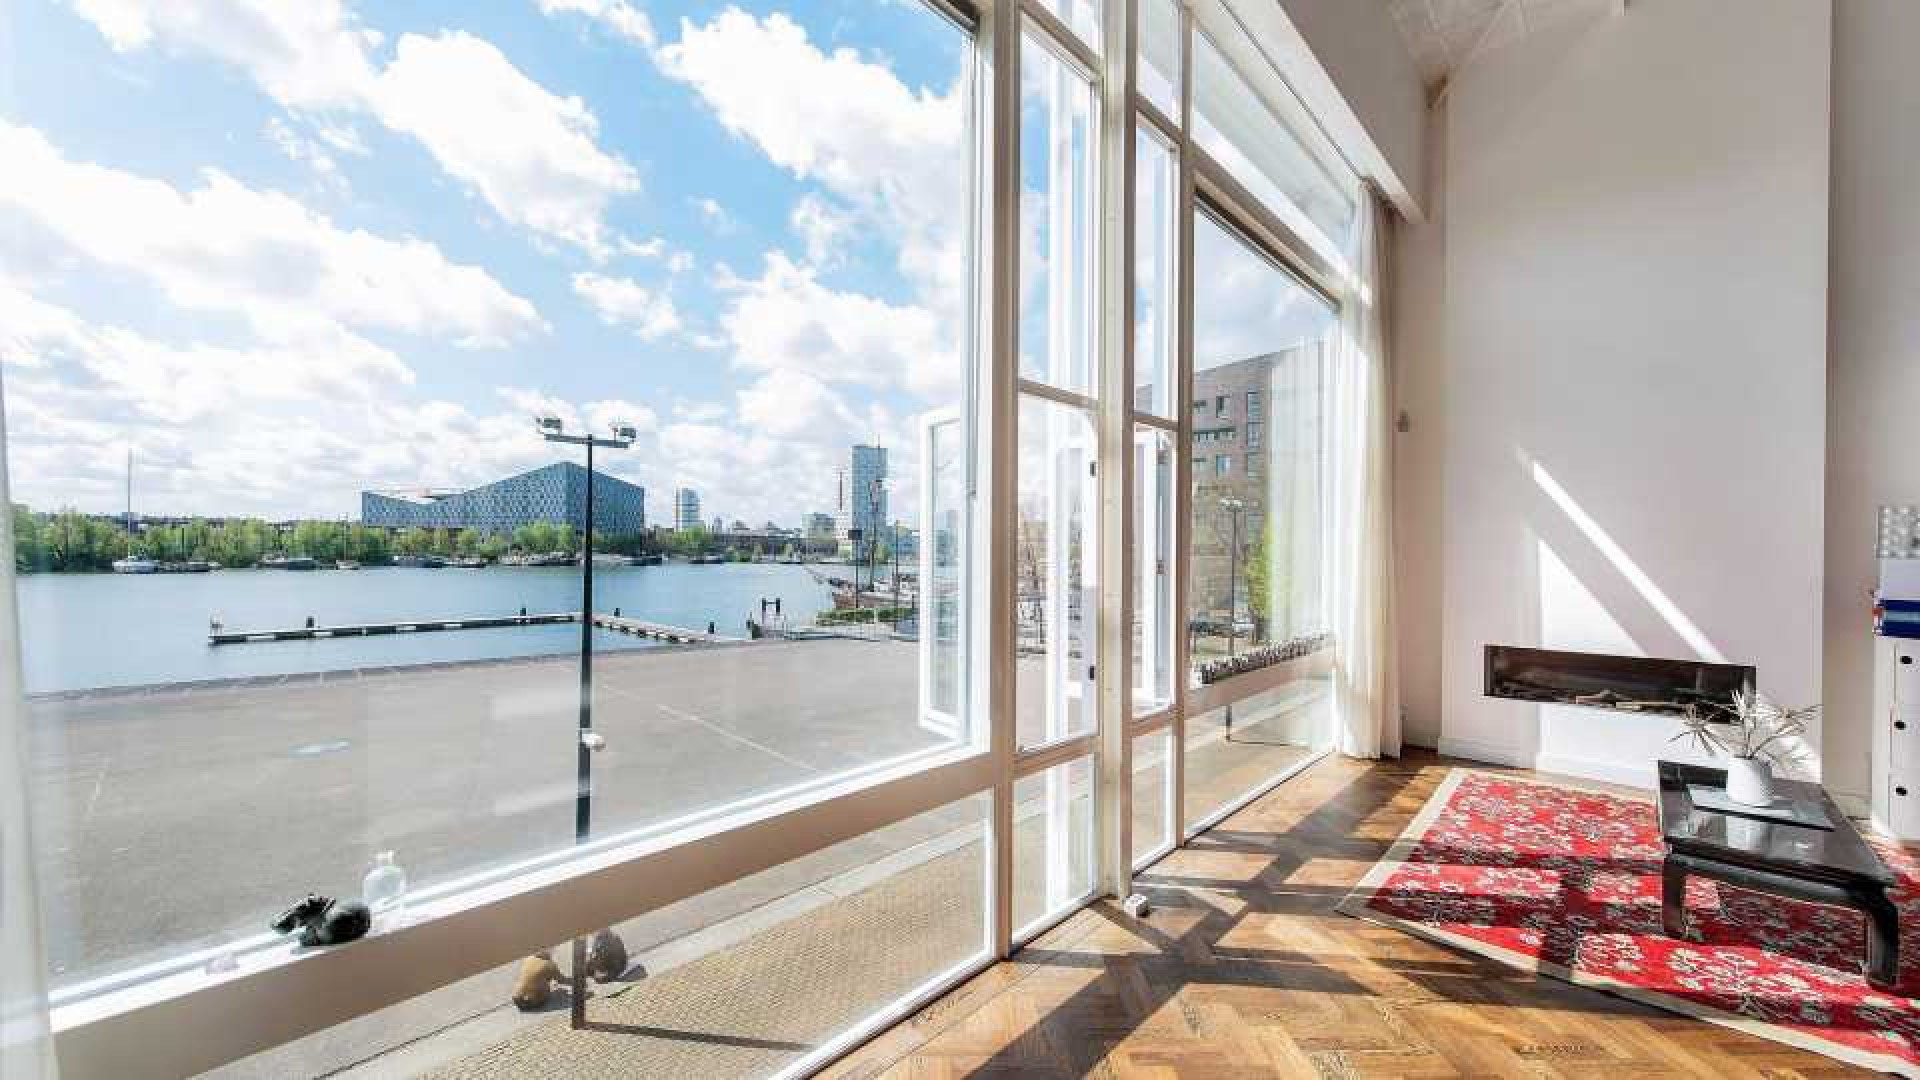 Deze bekende nederlander heeft al zeven jaar zijn Amsterdamse penthouse te koop staan. Zie foto's penthouse